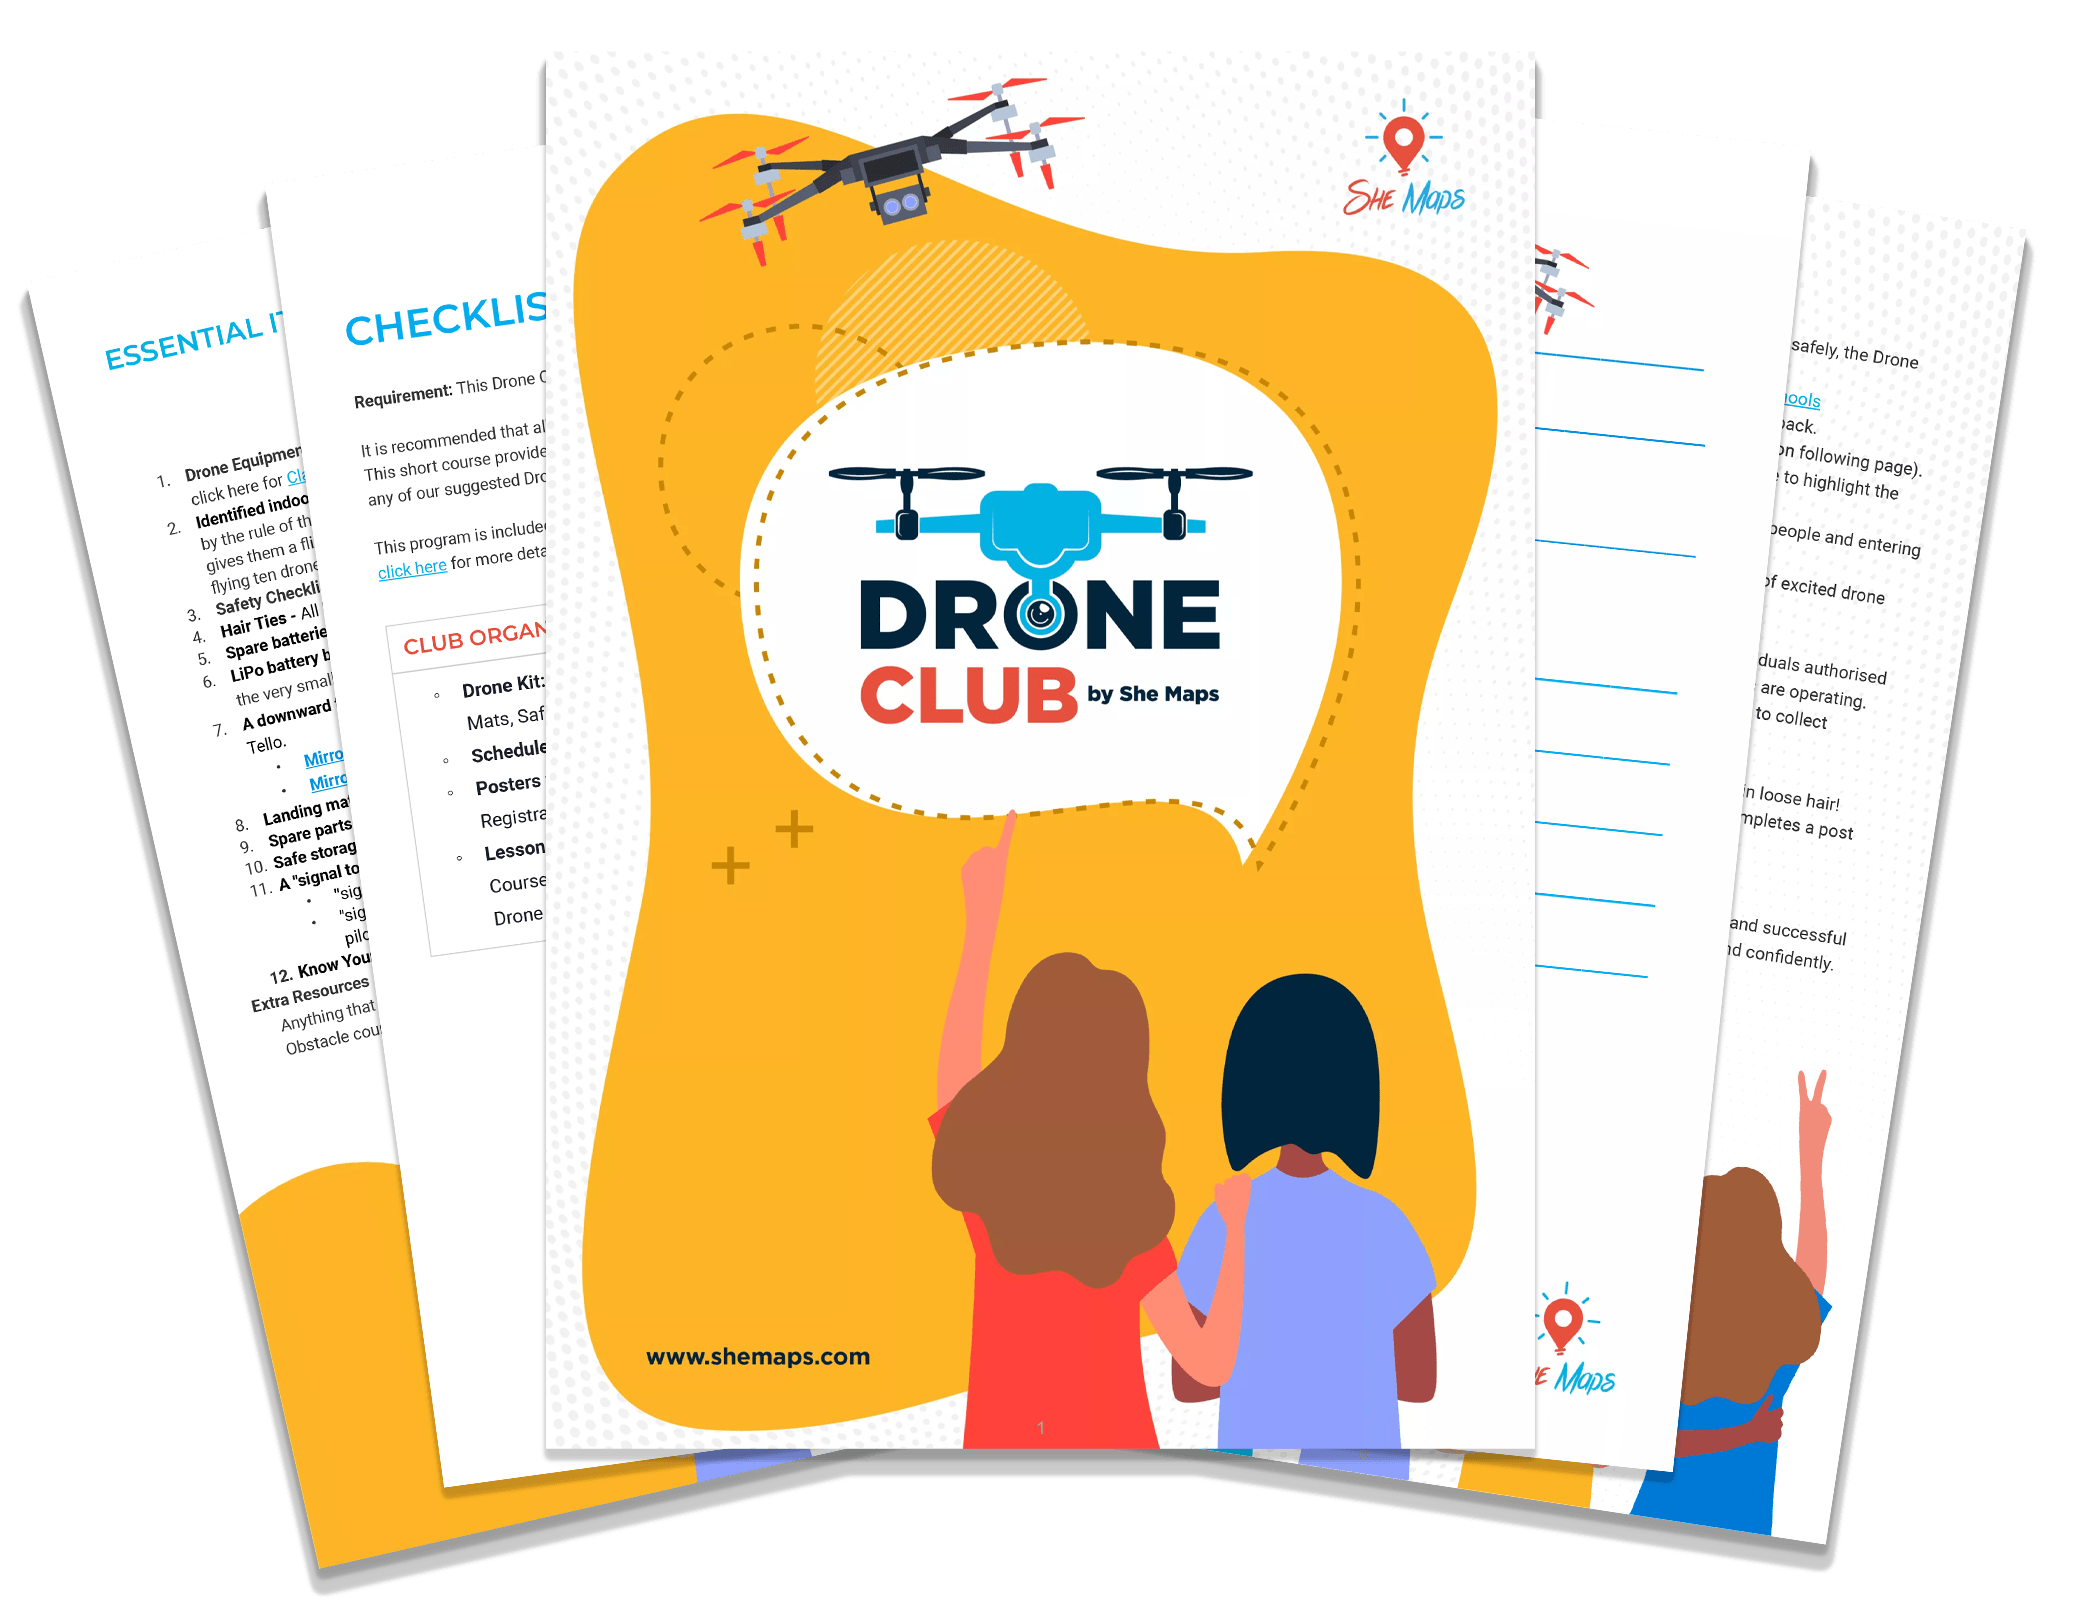 drone club 9 2 22